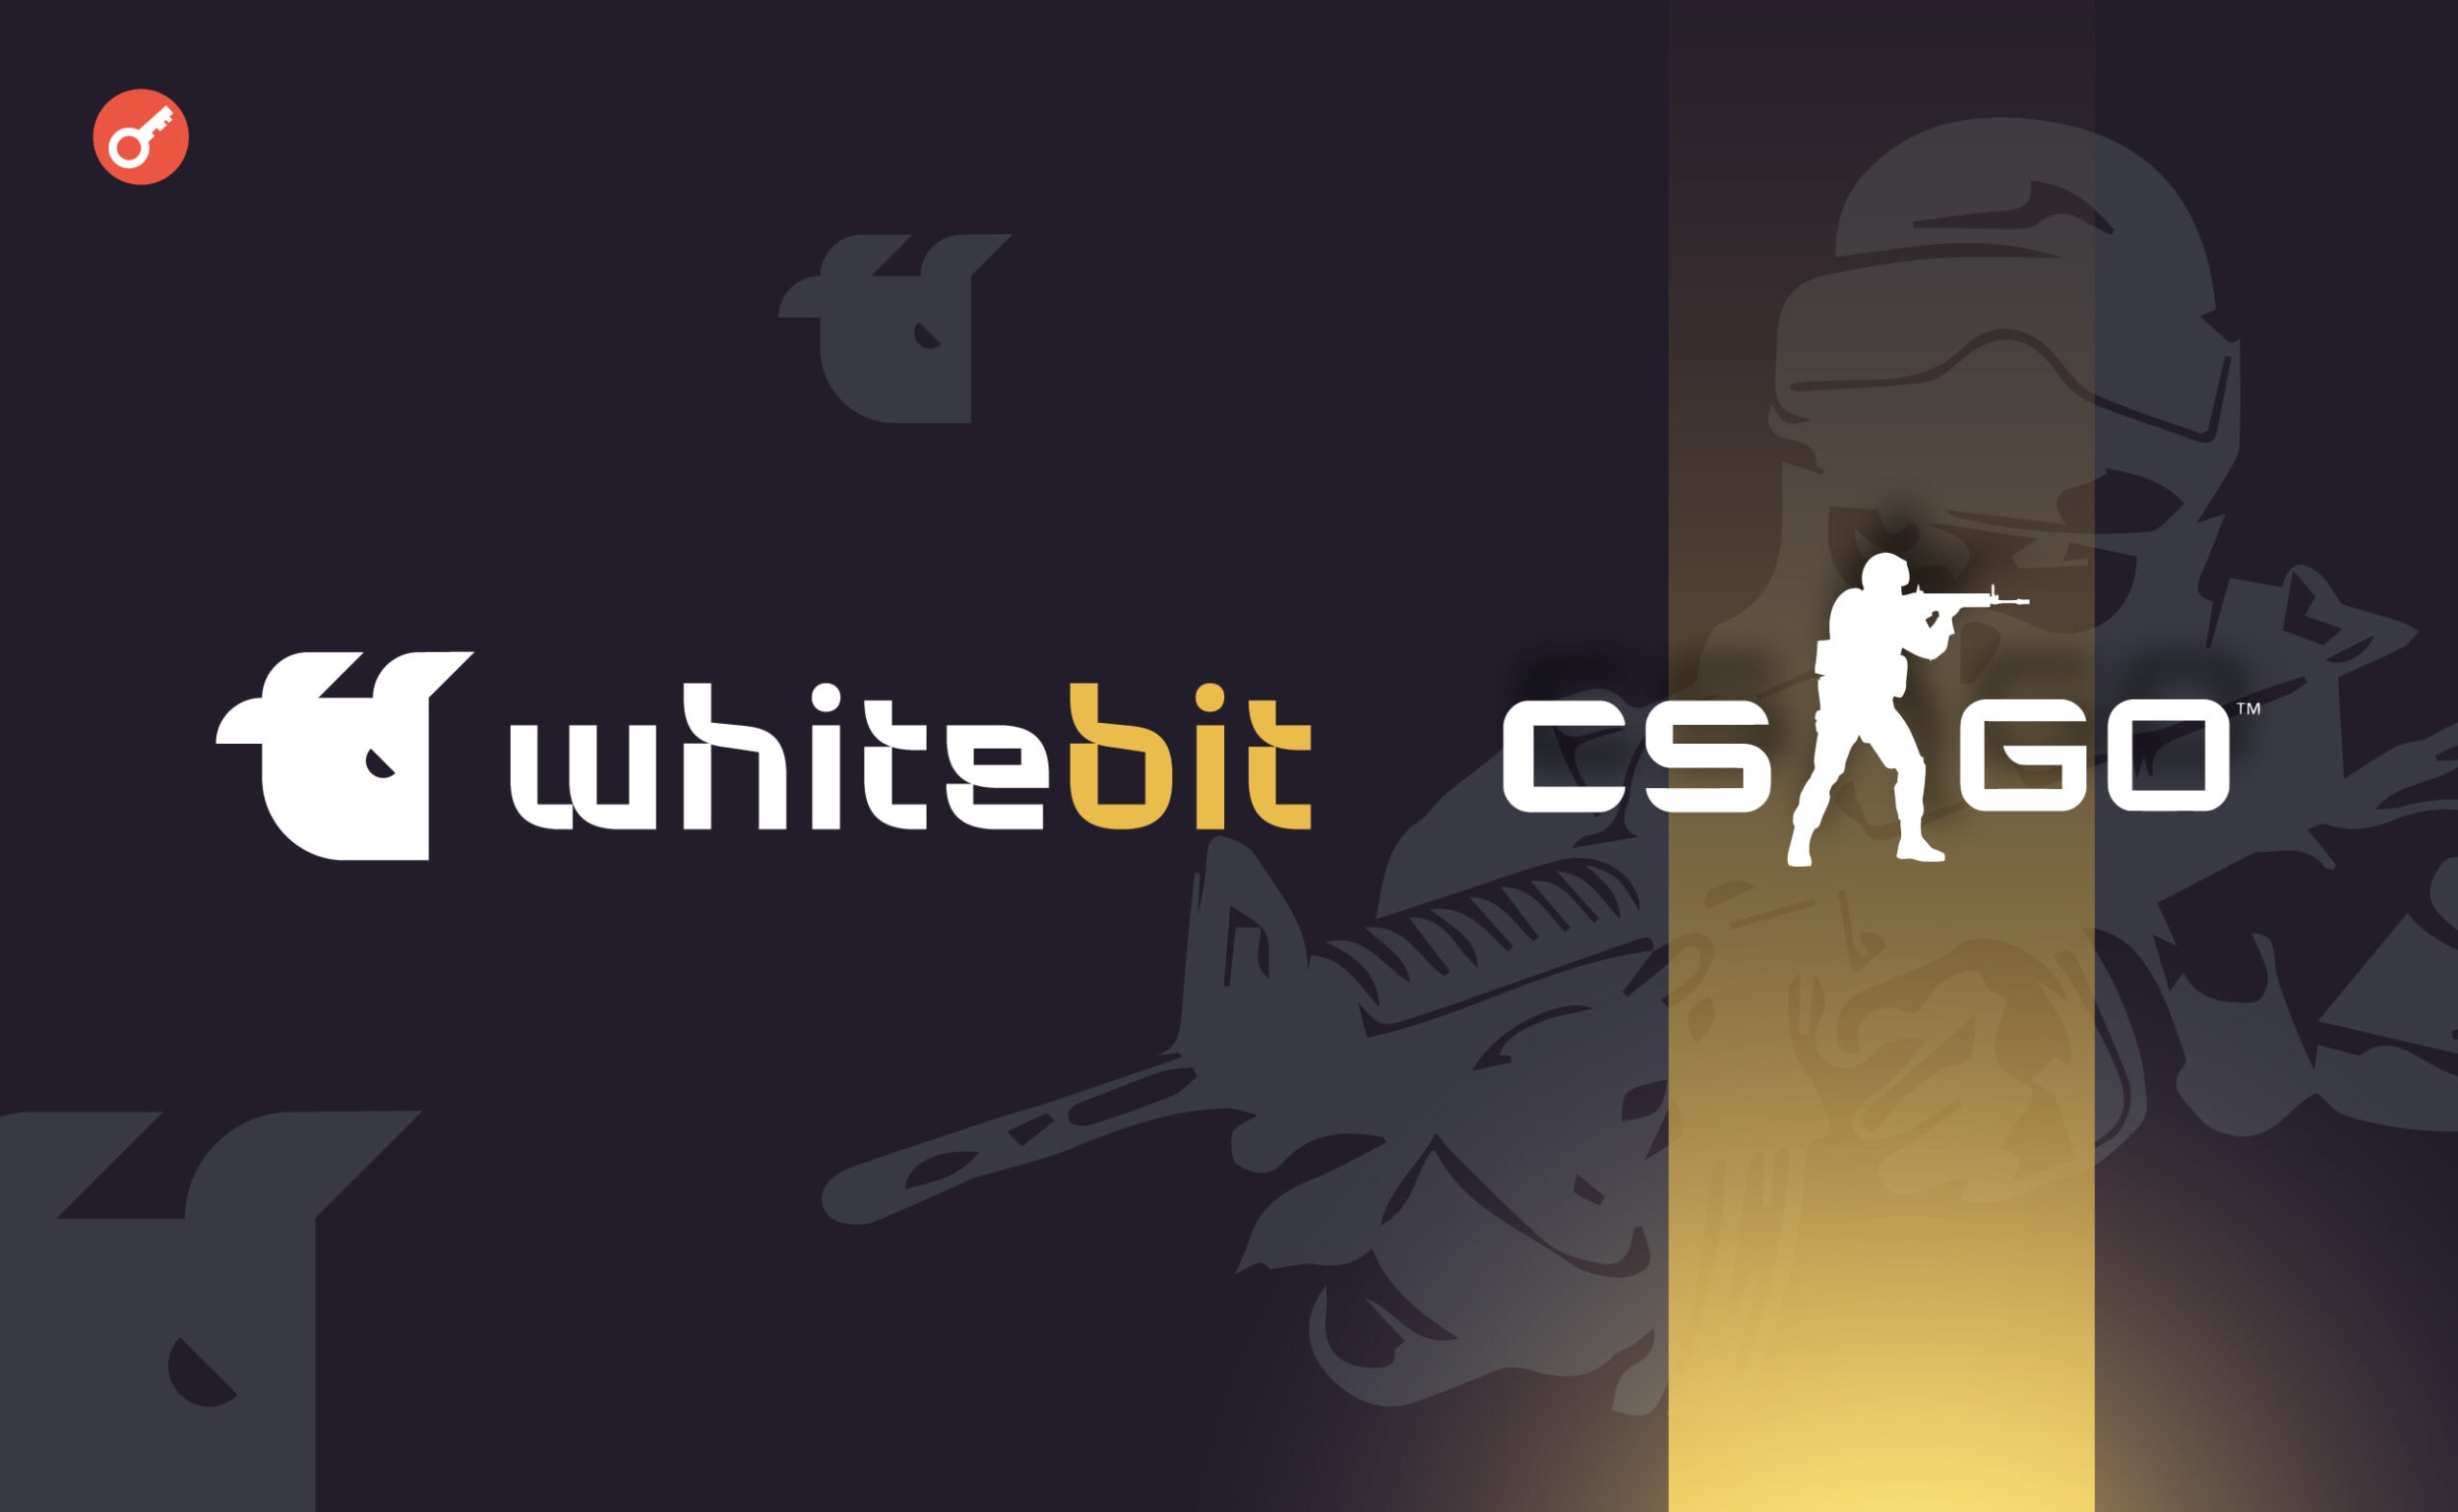 WhiteBIT оголосила про турнір із CS:GO з нагородами в криптовалюті. Головний колаж новини.